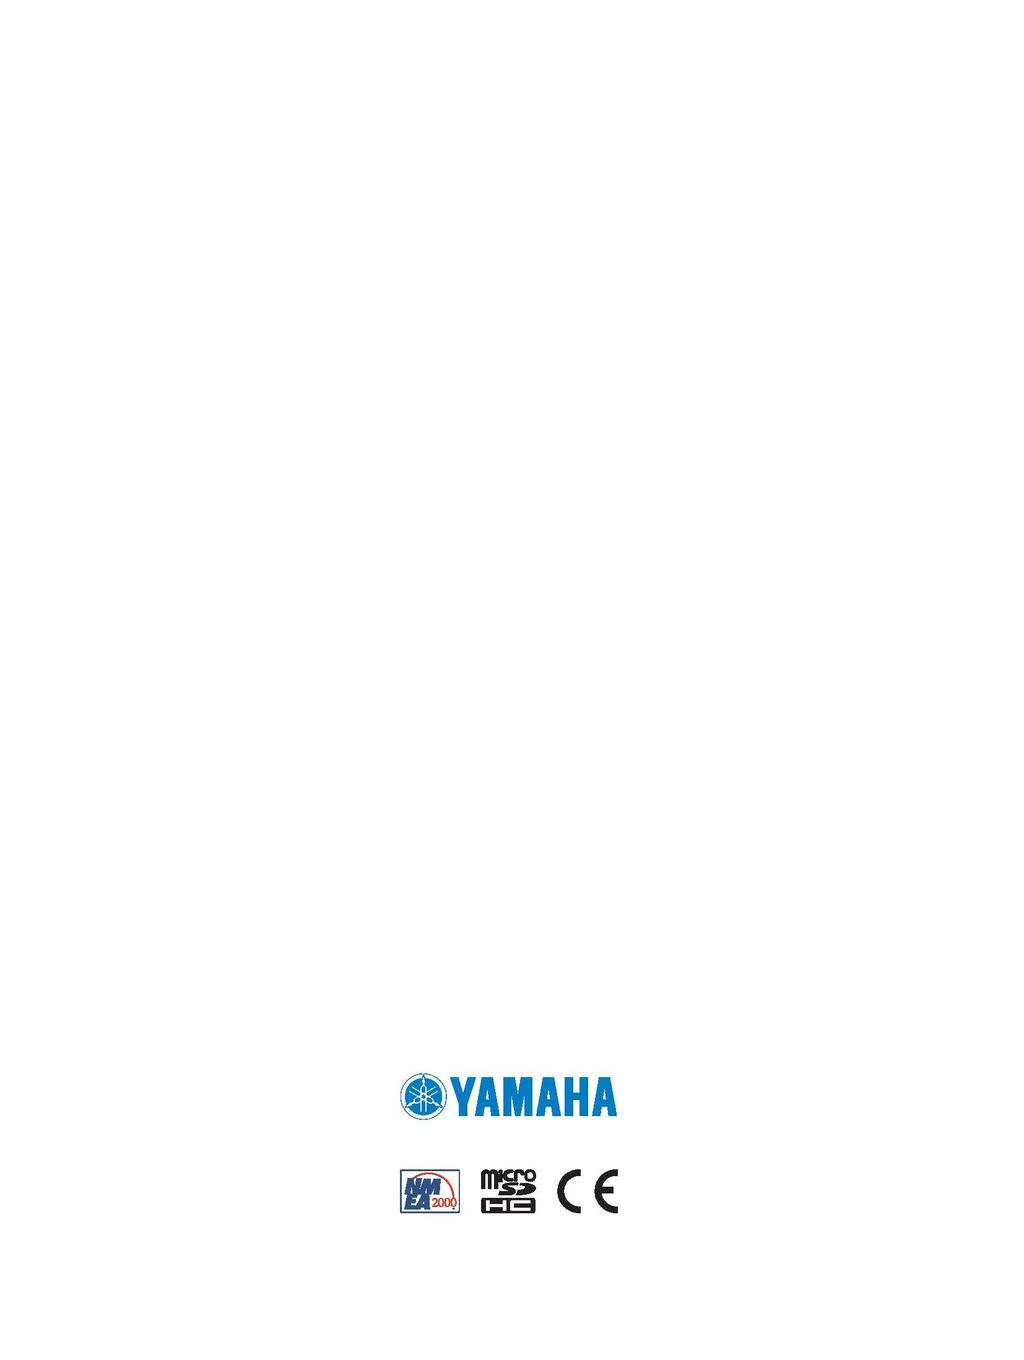 2017 YAMAHA Motor Co., LTD eller dess dotterbolag Yamaha, Yamaha logotypen, Command Link Plus och Helm Master är varumärken som tillhör YAMAHA Motor Co., LTD. Garmin, Garmin logotypen och BlueChart är varumärken som tillhör Garmin Ltd.